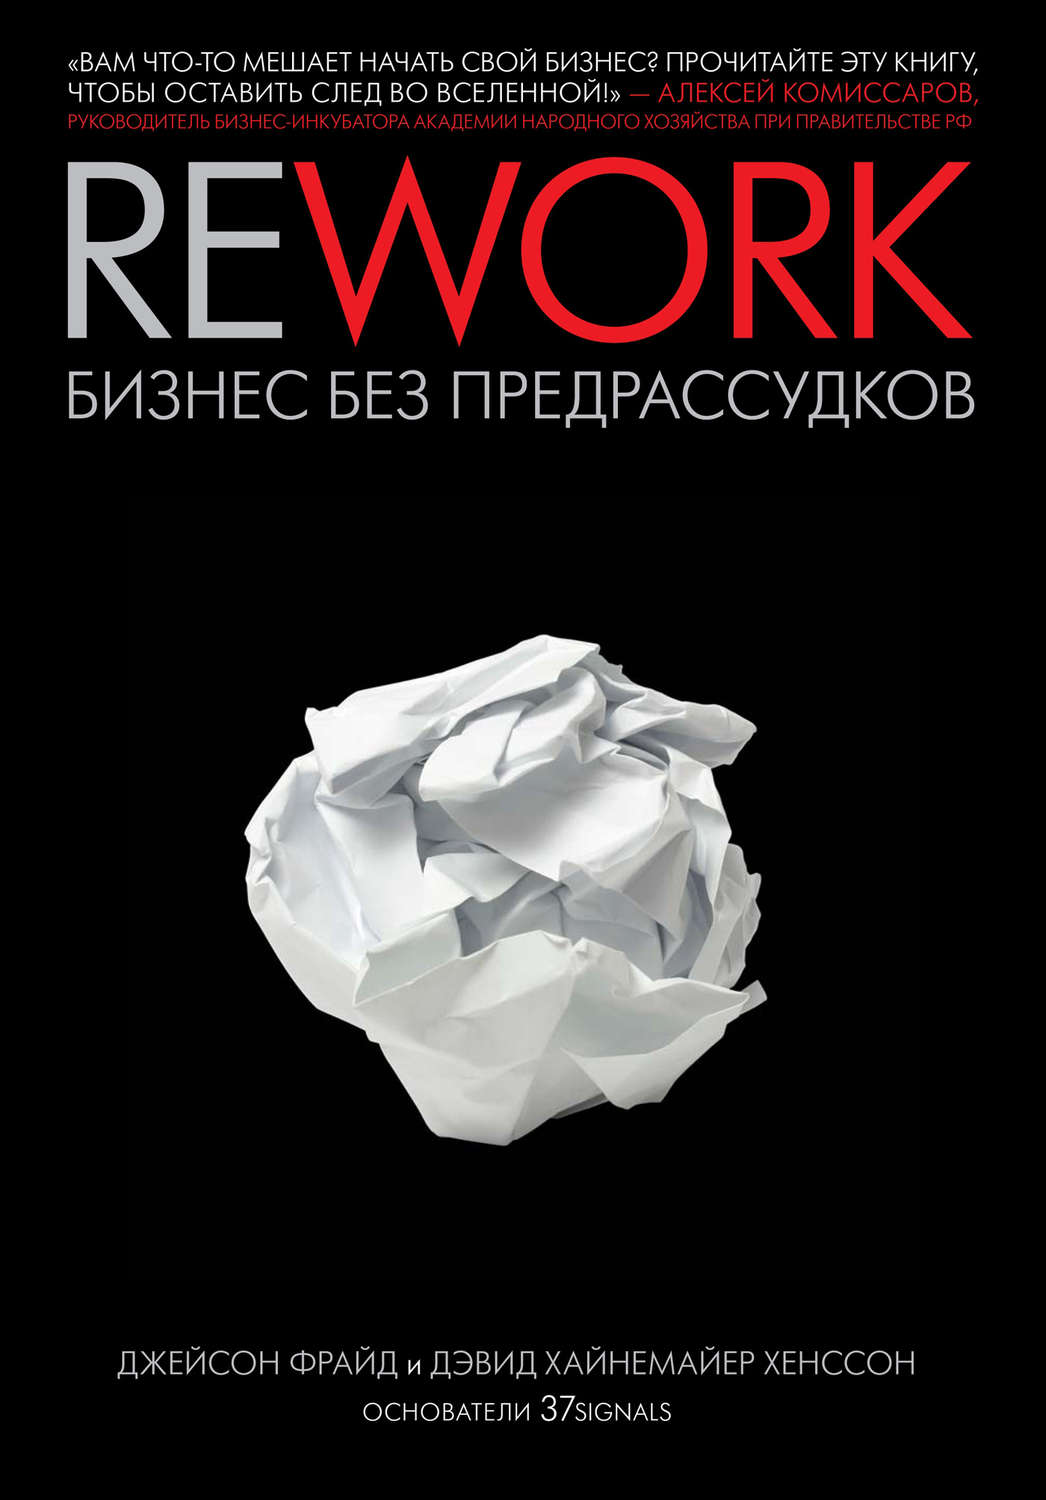 Читать онлайн rework бизнес без предрассудков книга построение бизнес моделей читать онлайн